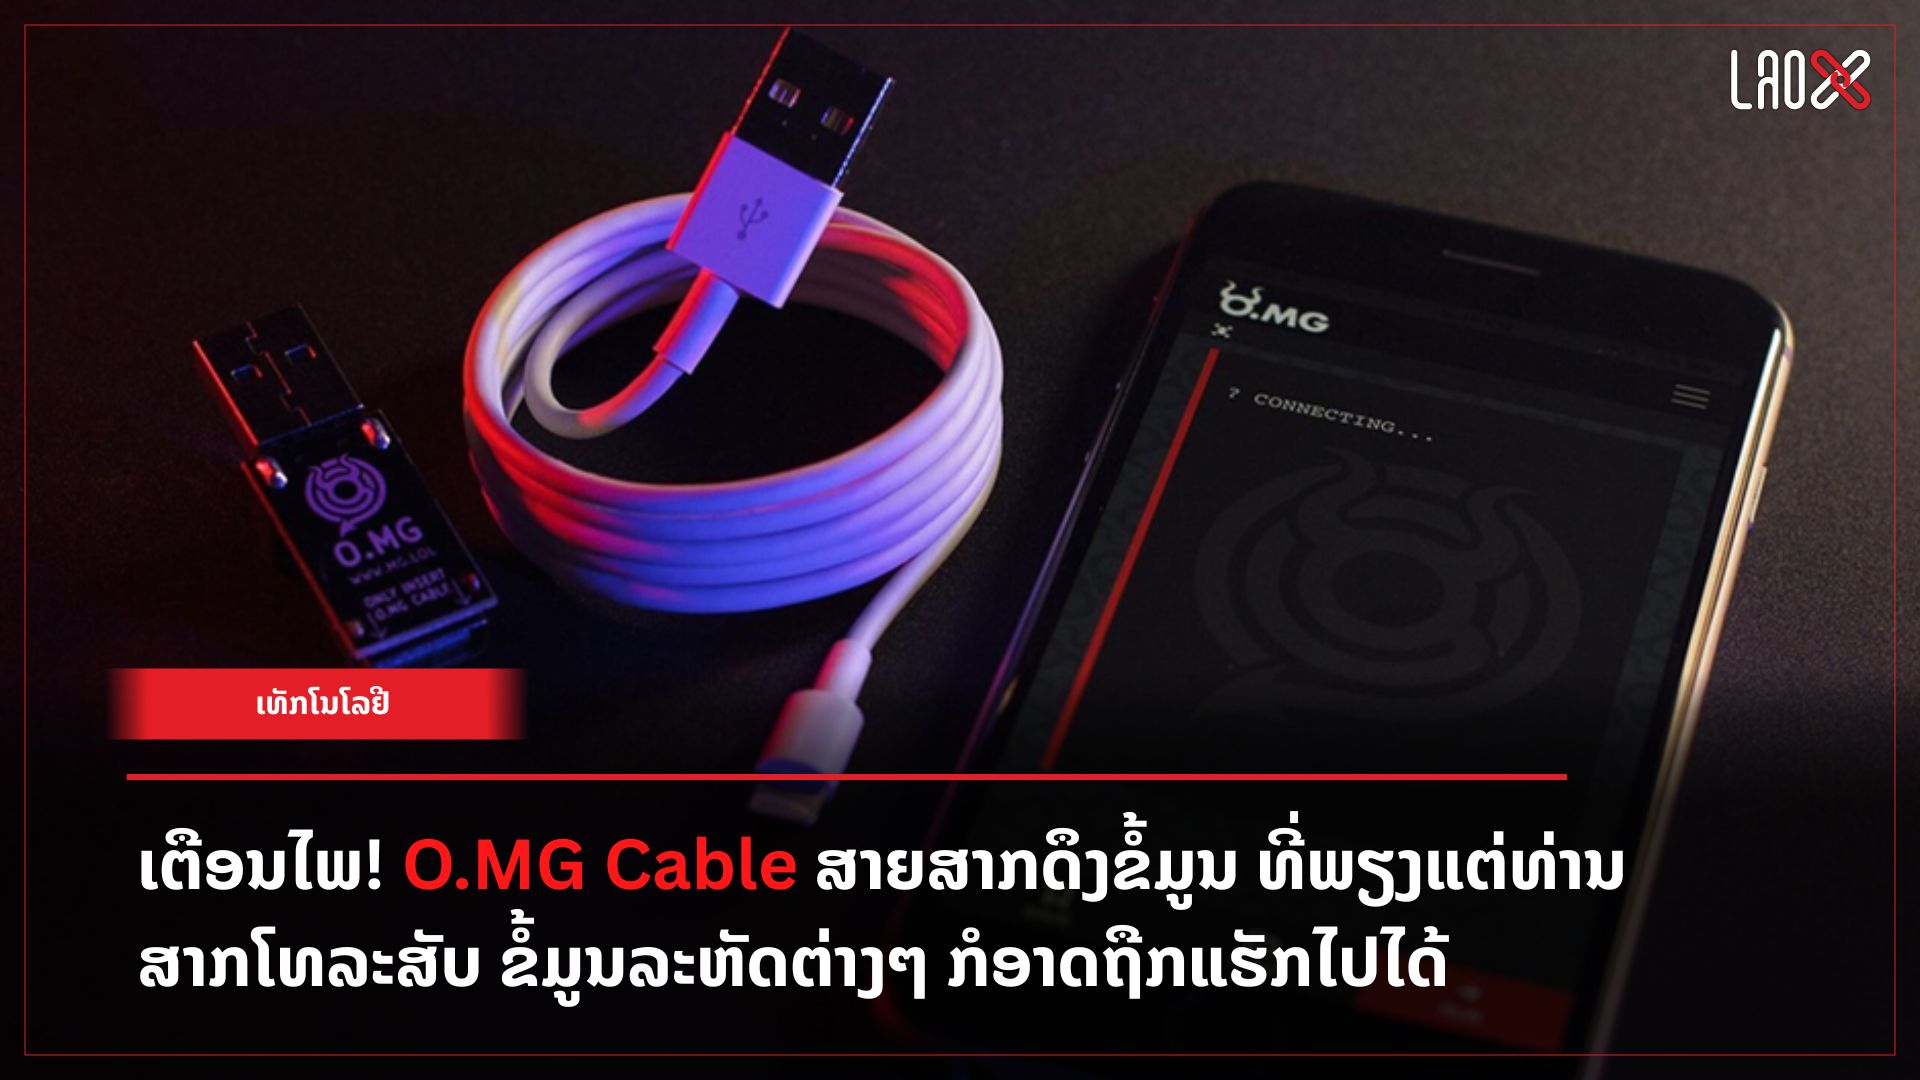 ເຕືອນໄພ! O.MG Cable